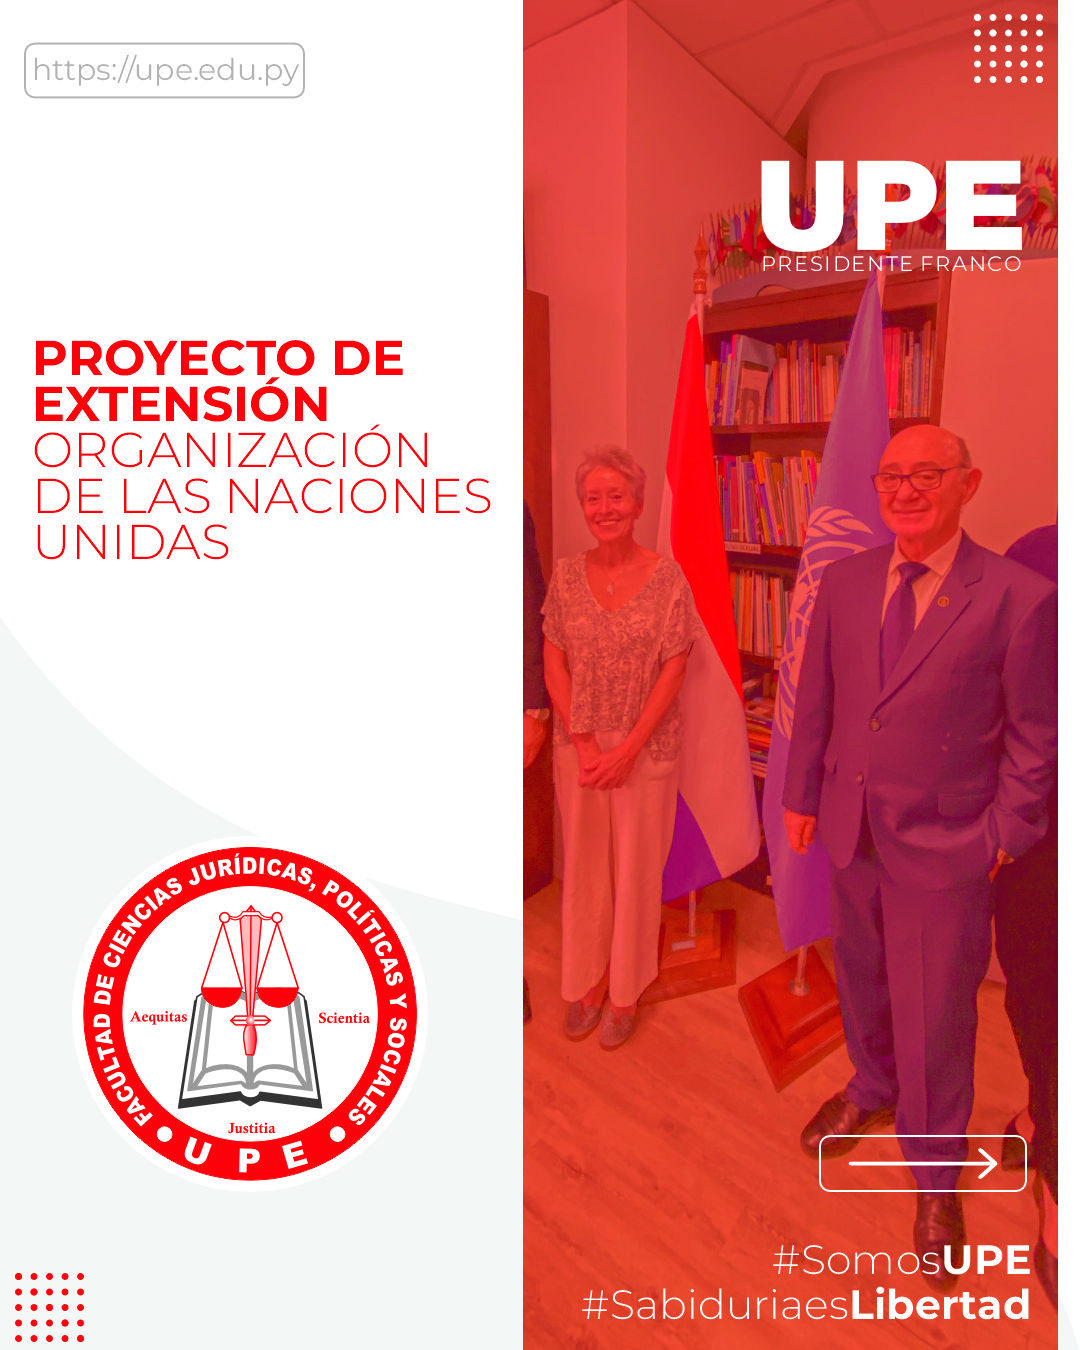 Proyecto de Extensión Universitaria: Visita a la oficina de la ONU - Asunción, Paraguay